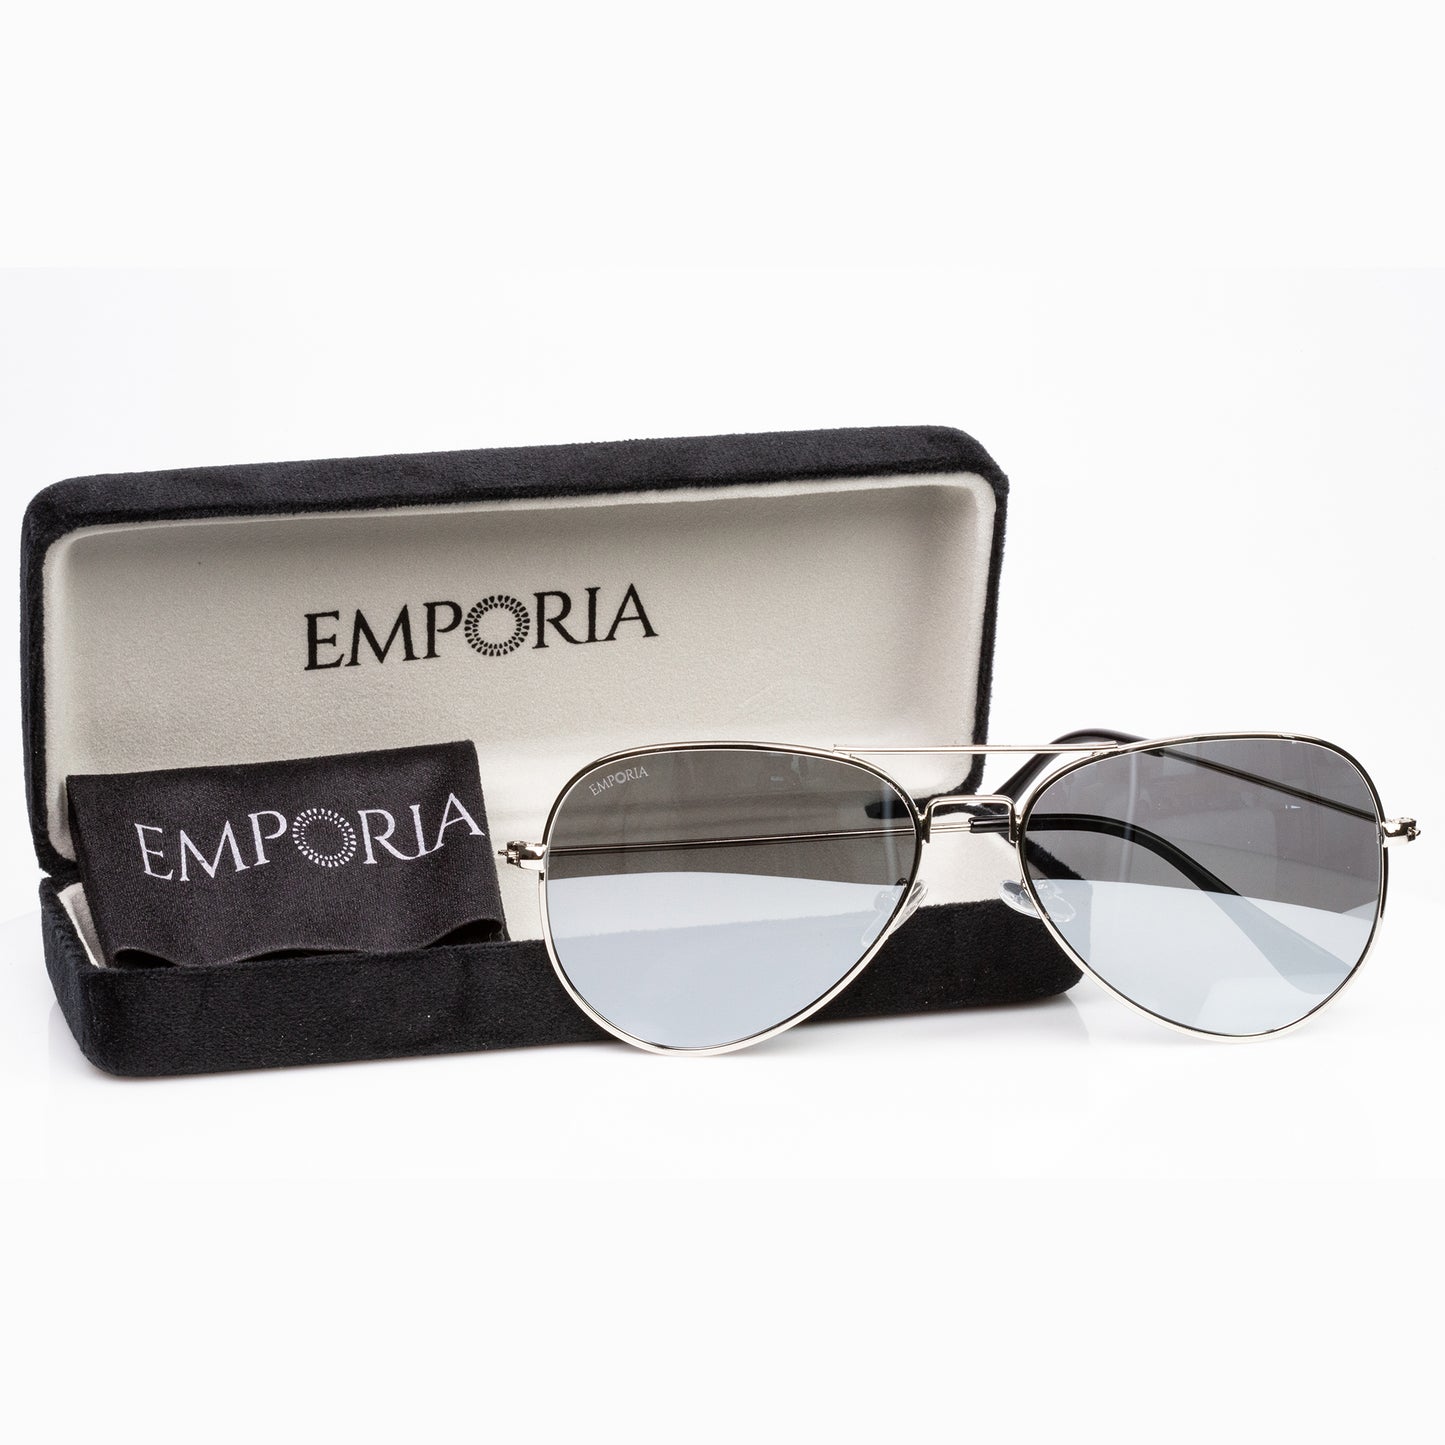 Emporia Italy - séria Aviator "KRYŠTÁL", polarizované slnečné okuliare s UV filtrem, s pevným puzdrom a čistiacou handričkou, chrómovo-strieborné šošovky, obrúčky striebornej farby